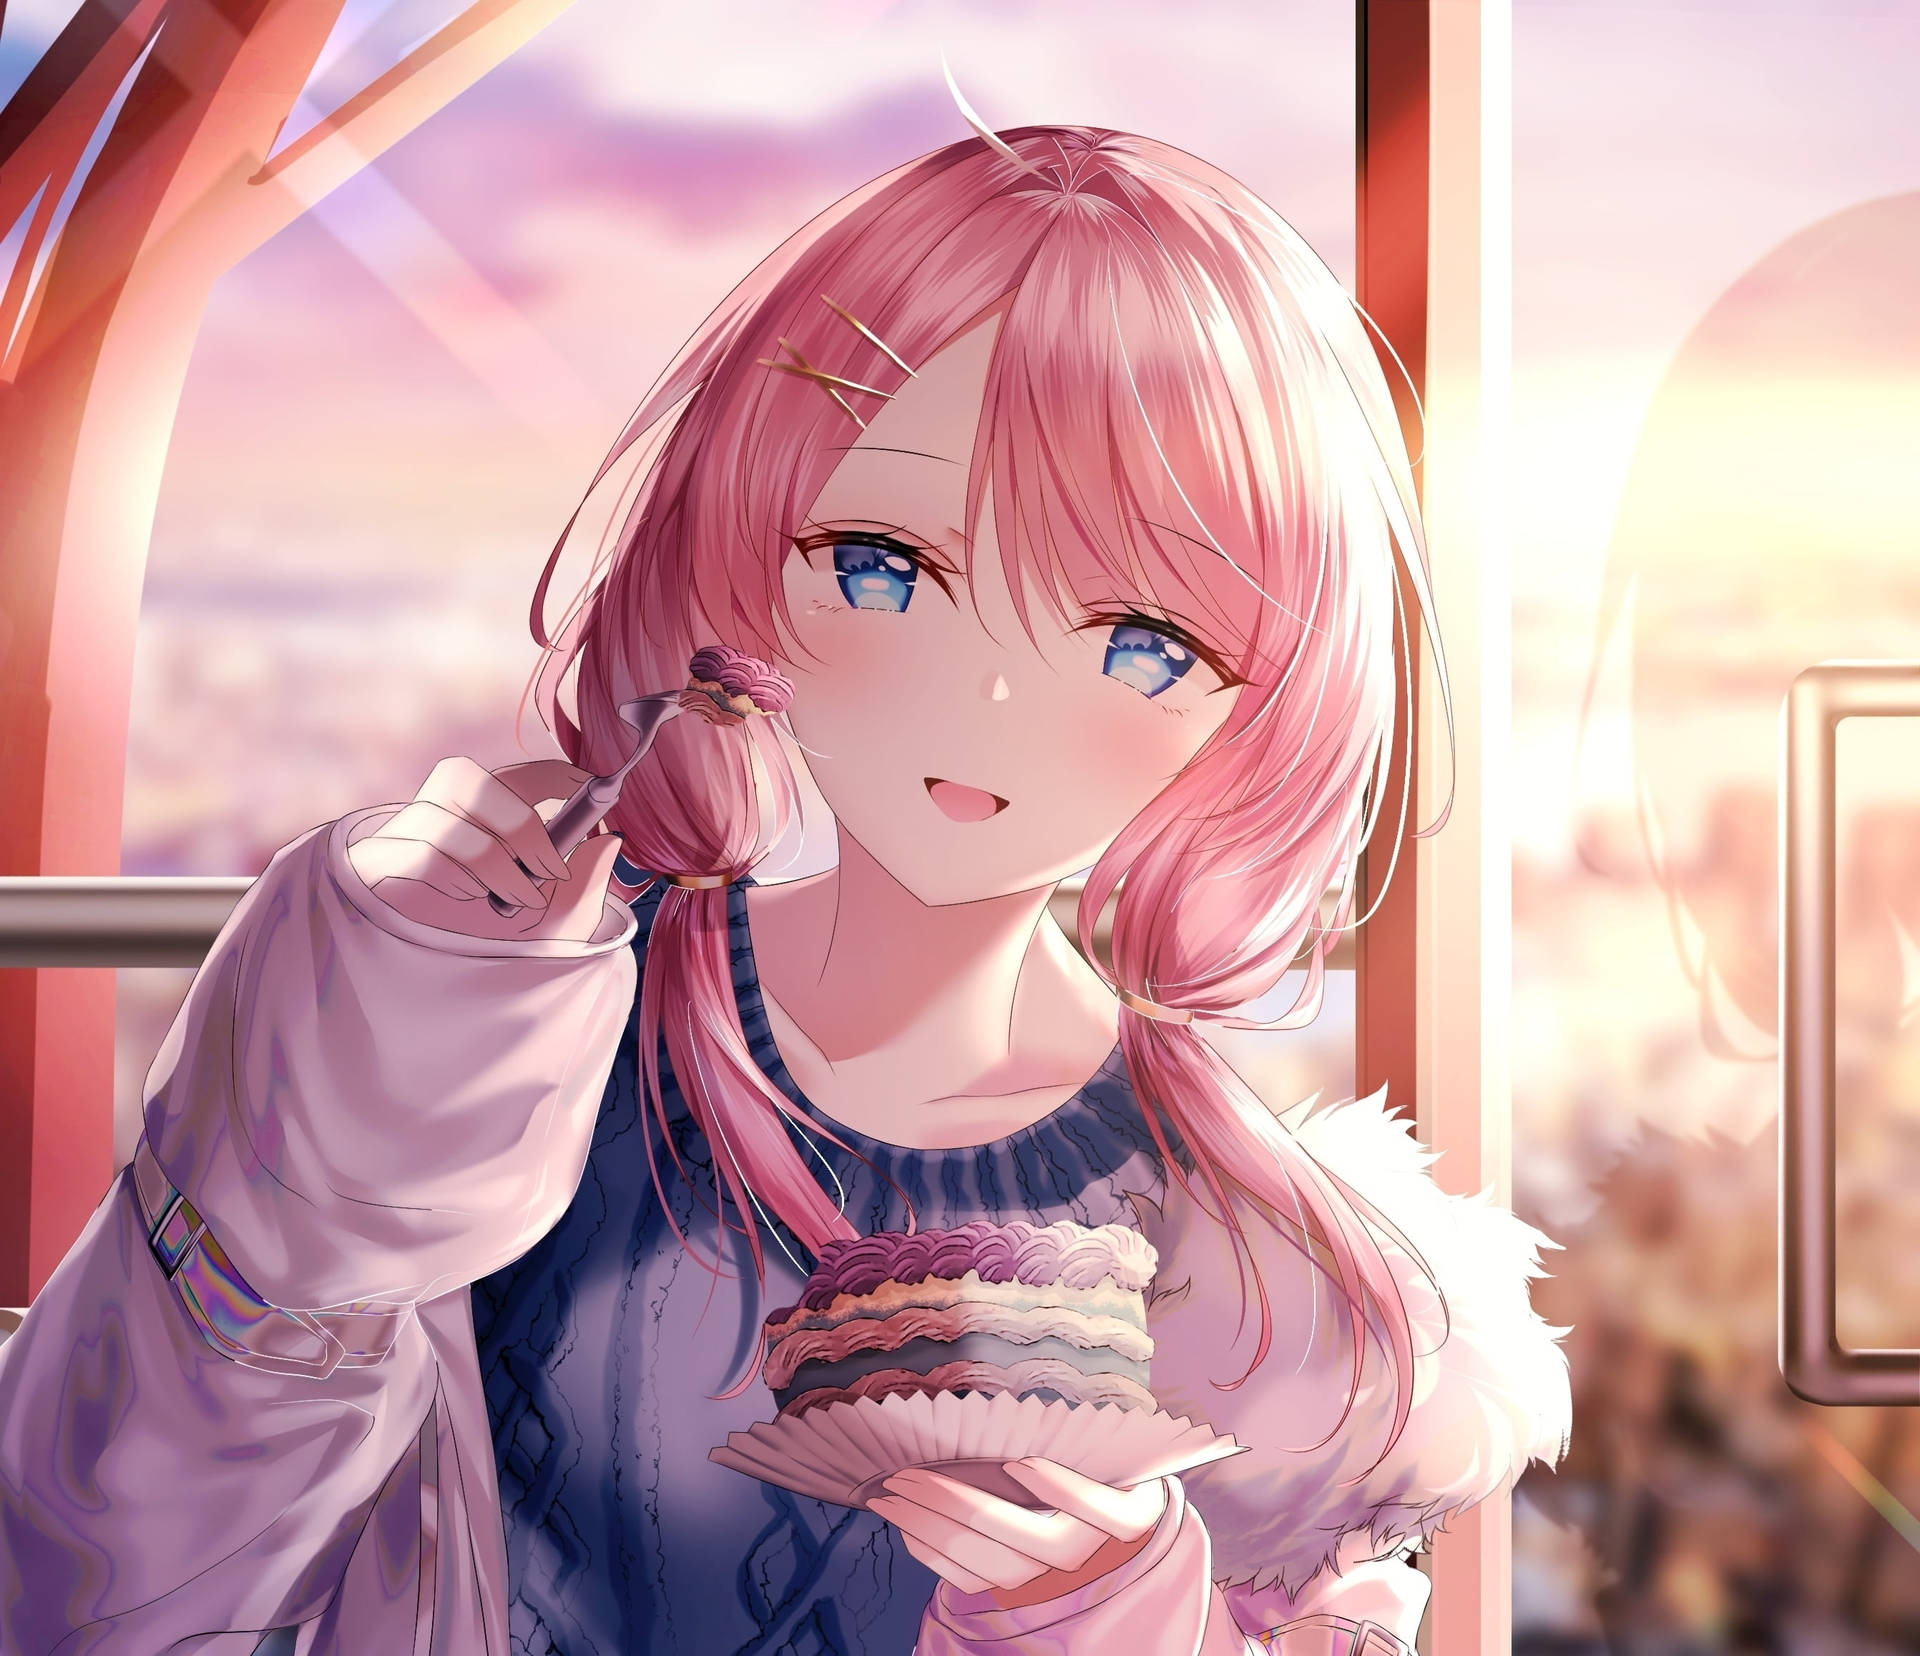 Aesthetic Anime Girl Eating Cake PFP Wallpaper